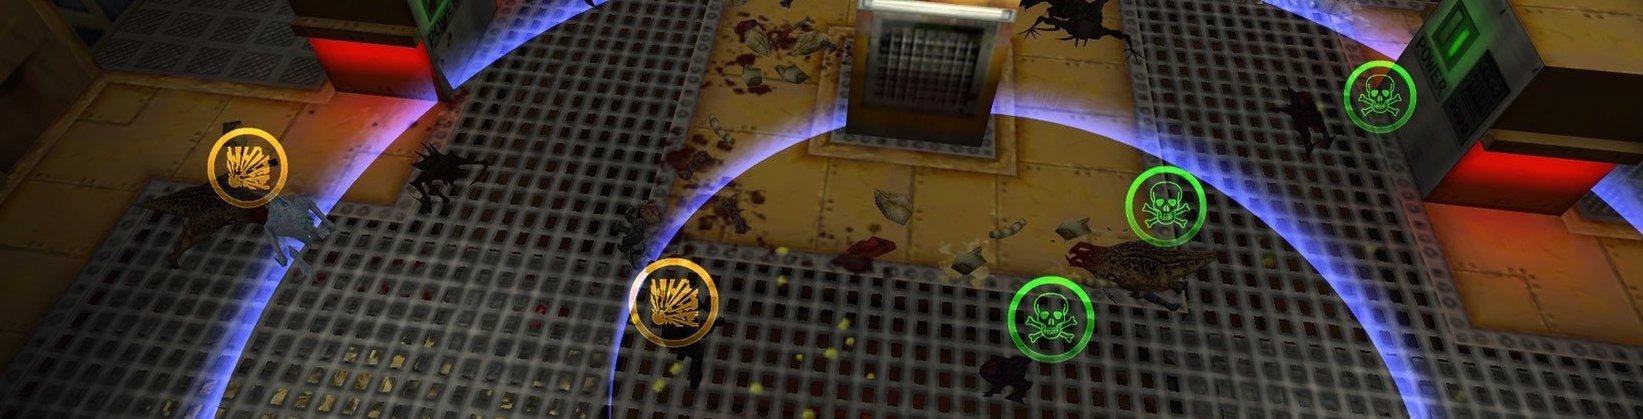 Immagine di La mod di Half-Life che ha impiegato 17 anni per sbarcare su Steam - articolo